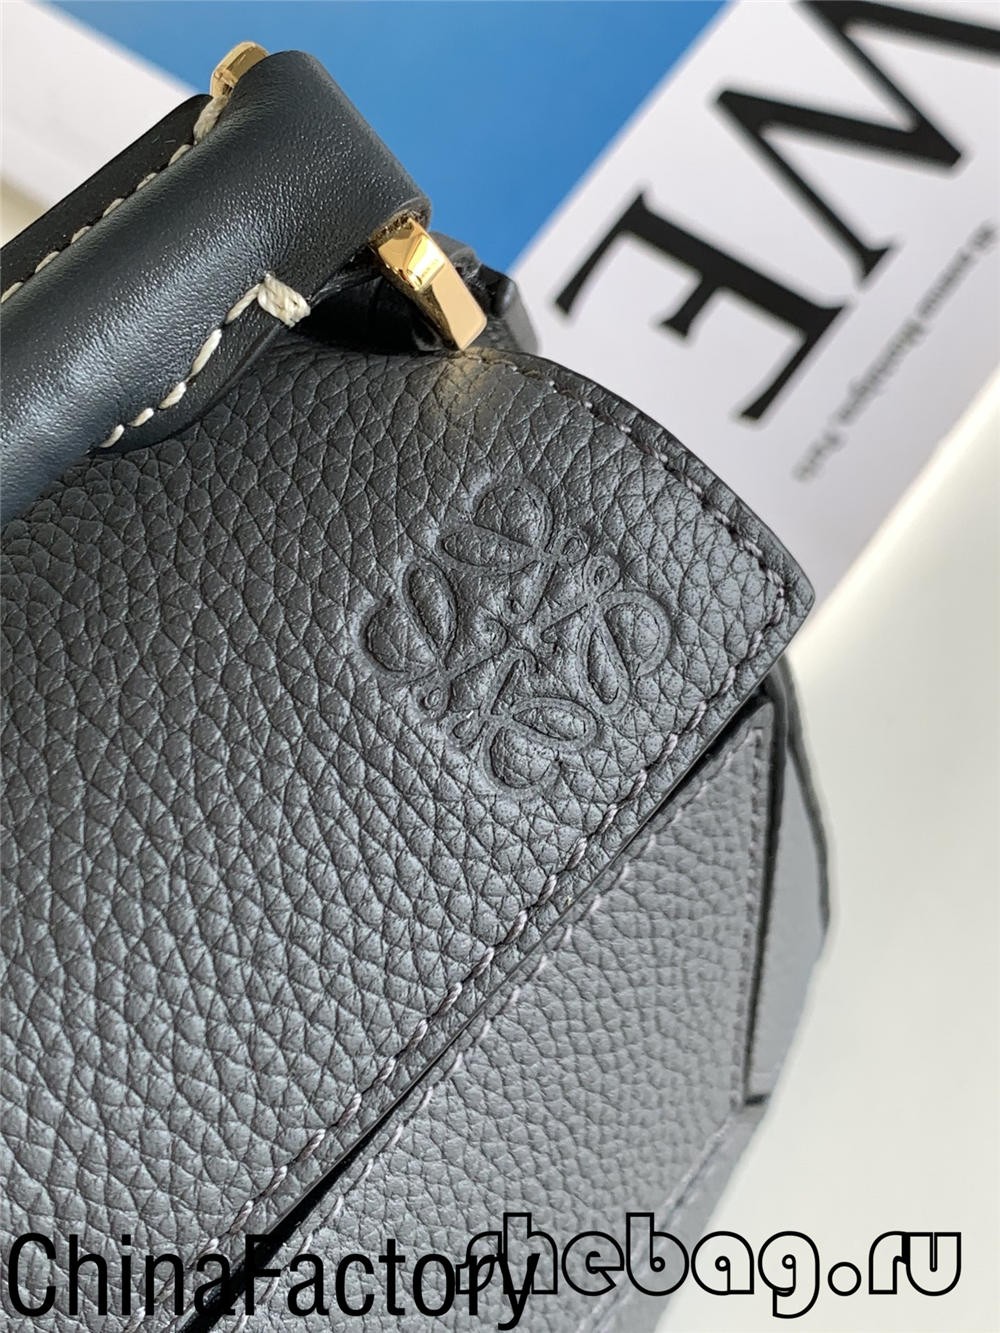 Best Loewe bag replica review: Loewe Cubi (updated 2022)-Best Quality Fake Louis Vuitton Bag Online Store, Replica designer bag ru